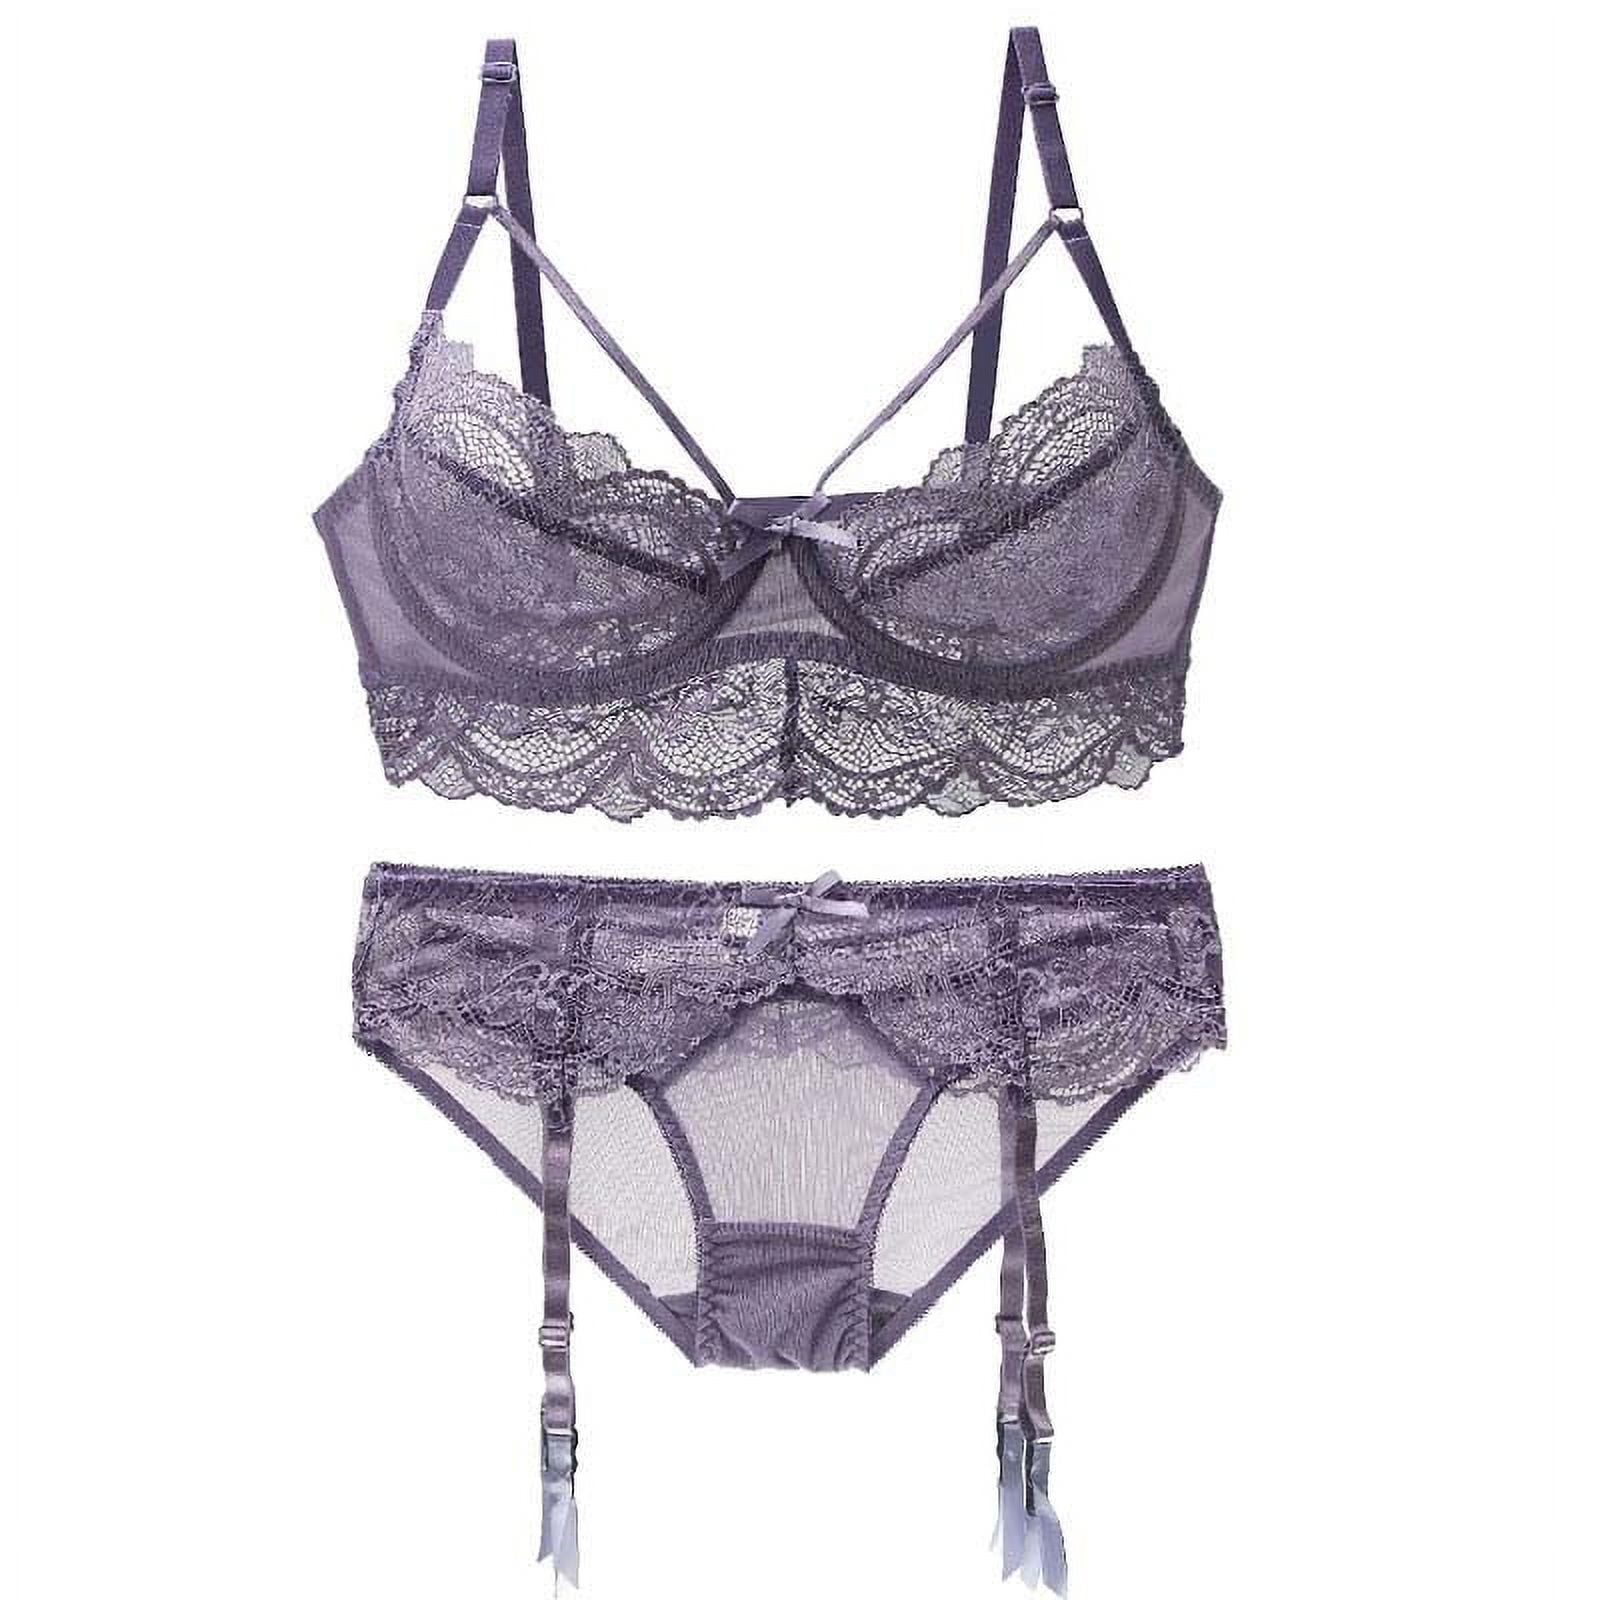 Bali Lace Desire Underwire Bra Women's Adjustable Comfort-U Straps V  Neckline DF6543 